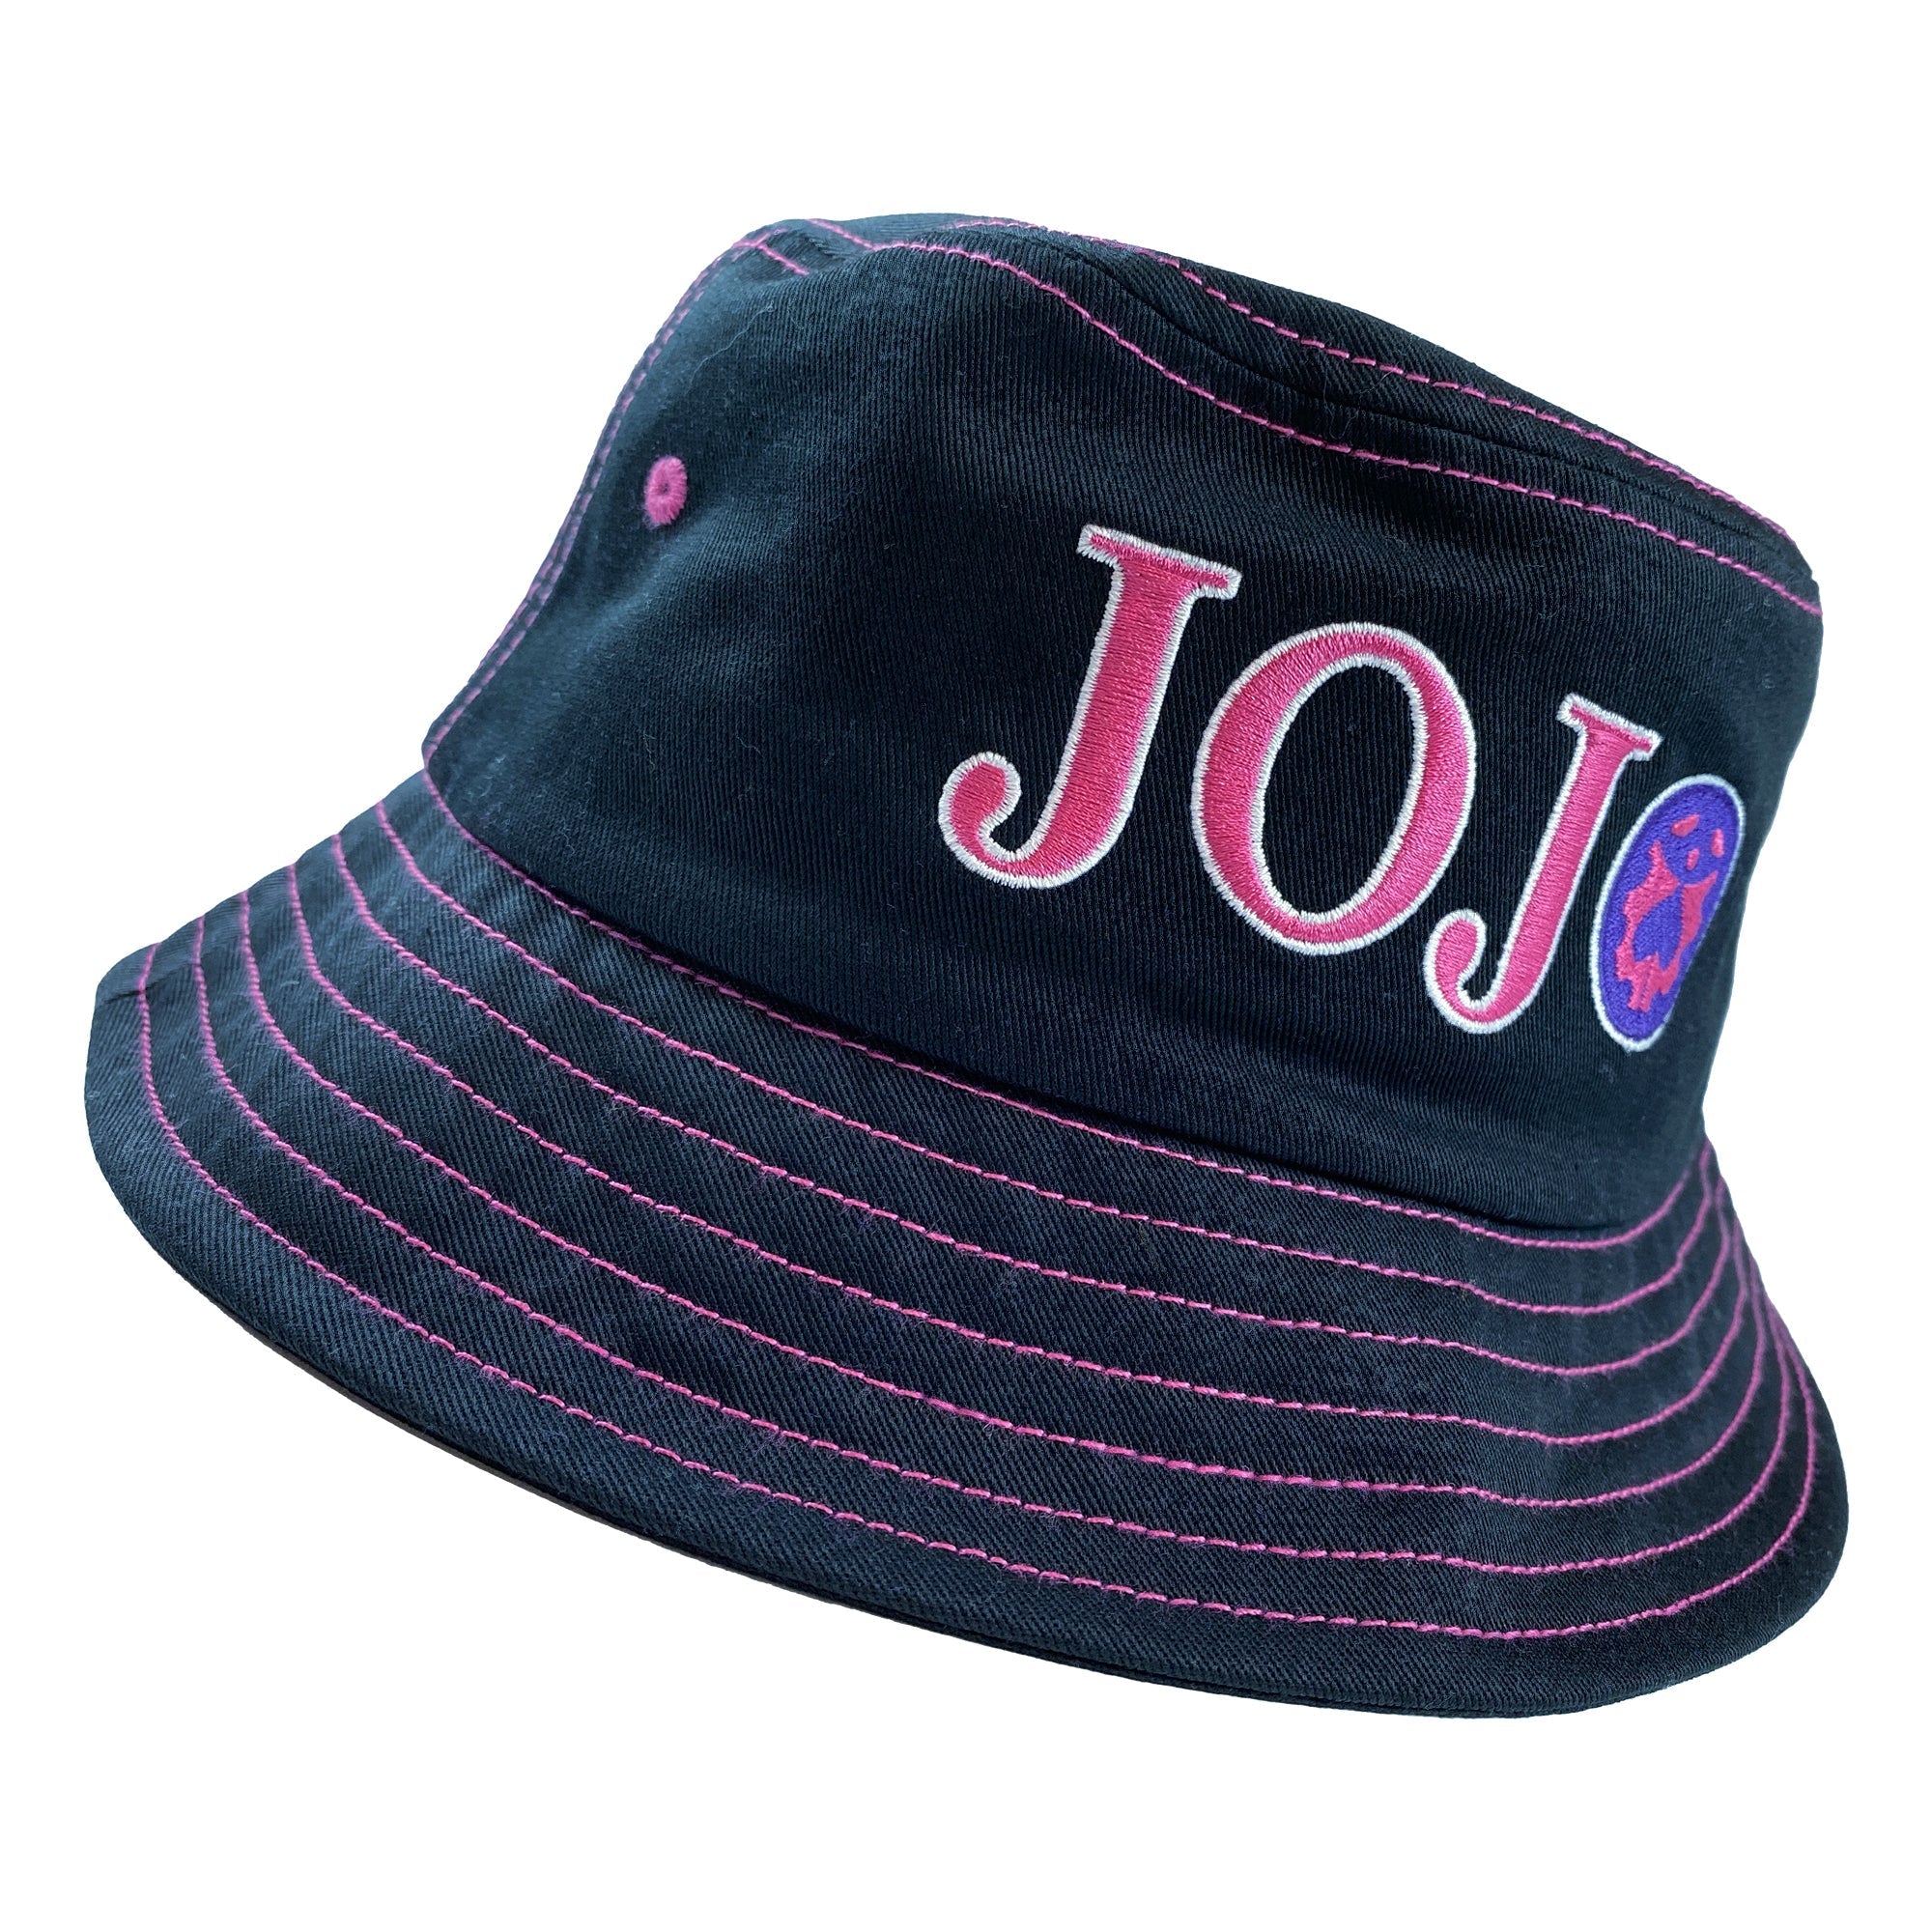 JoJo's Bizarre Adventure - Logo Bucket Hat image count 0